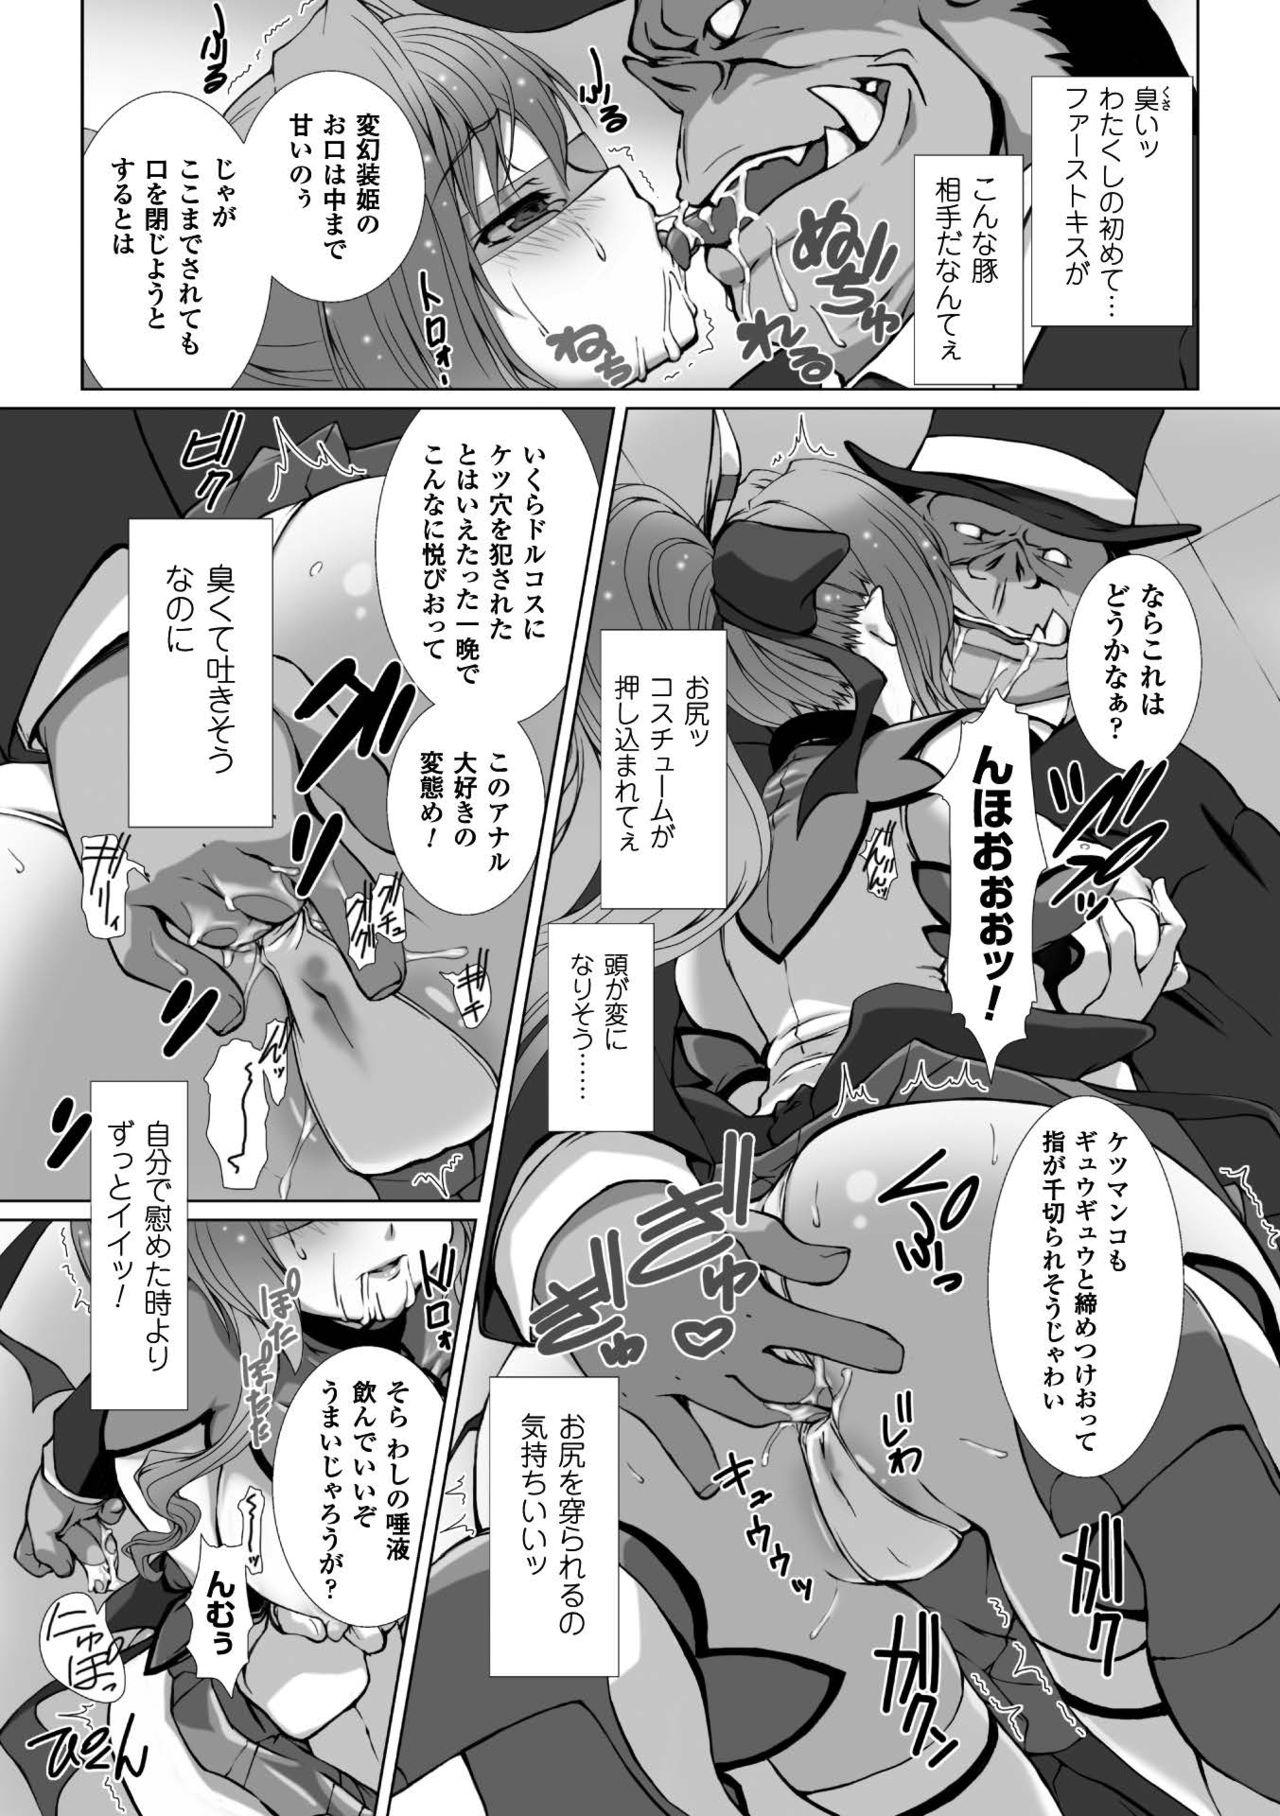 Seigi no Heroine Kangoku File Vol. 7 31